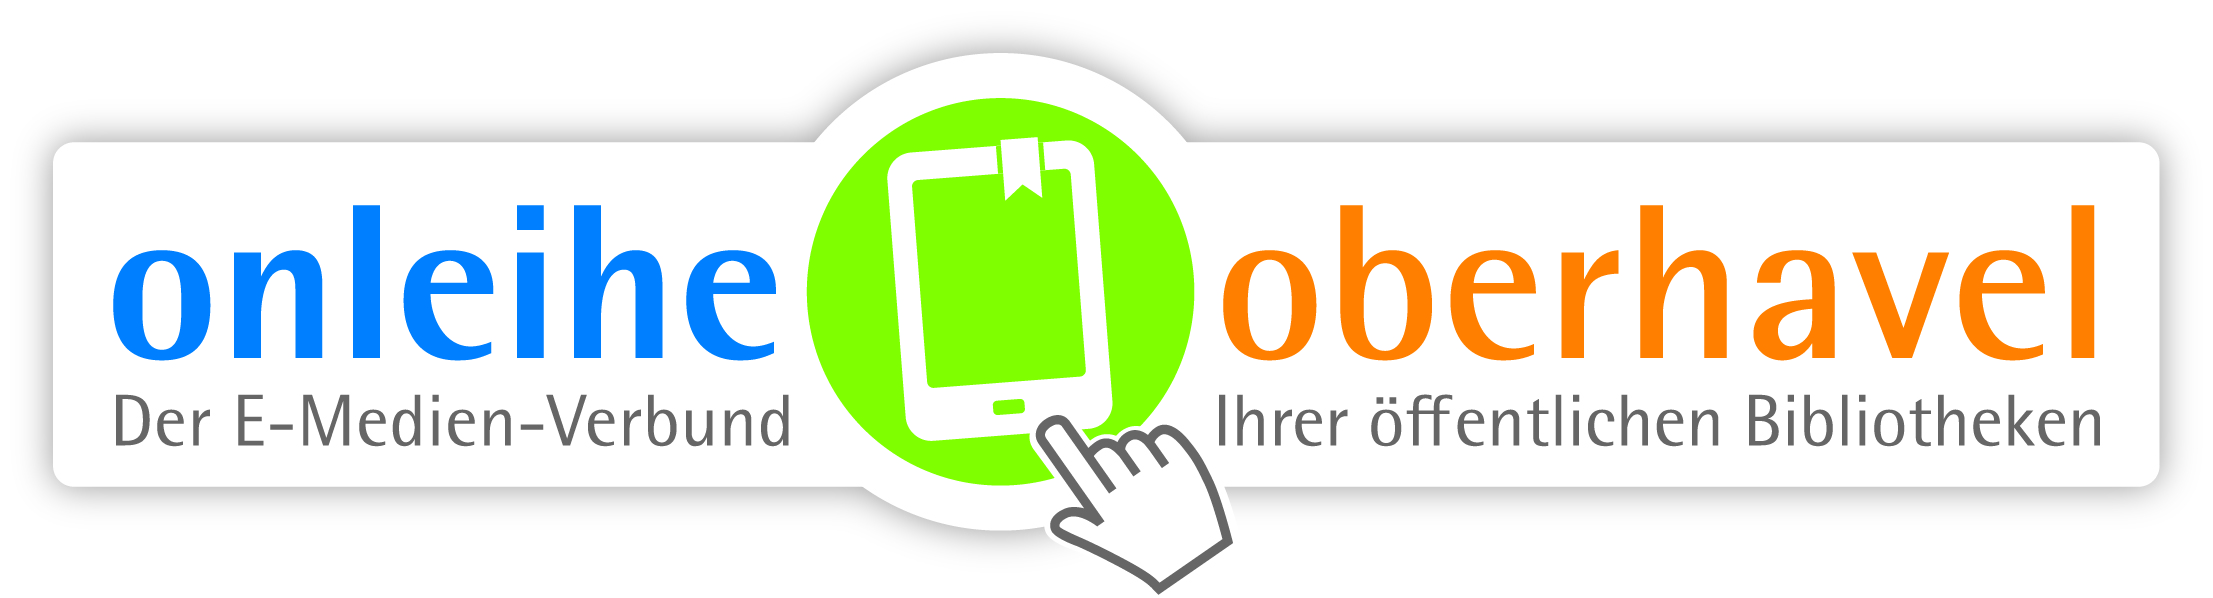 Onleihe Oberhavel Logo